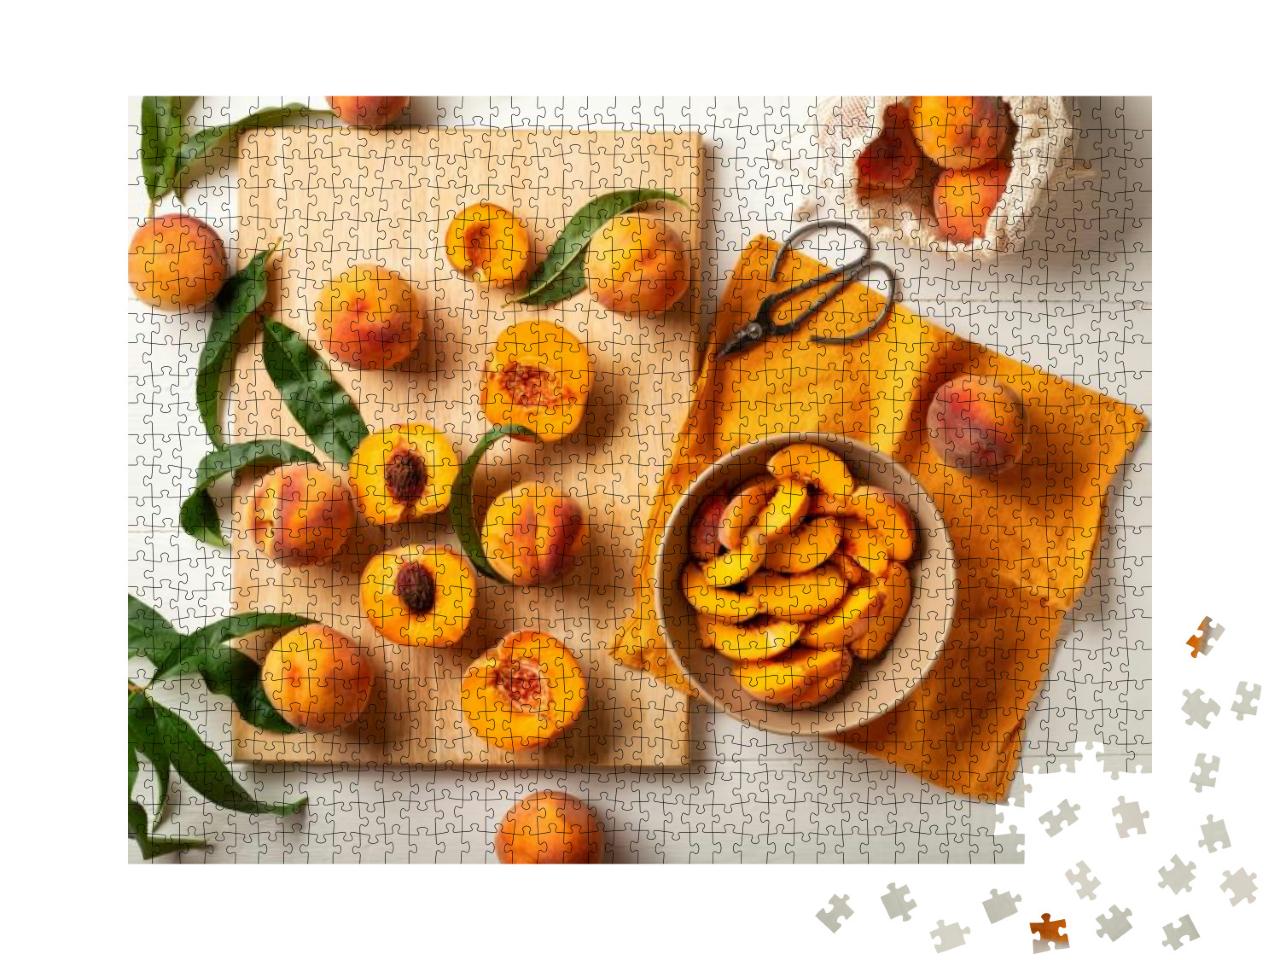 Puzzle 1000 Teile „Frische Pfirsiche“